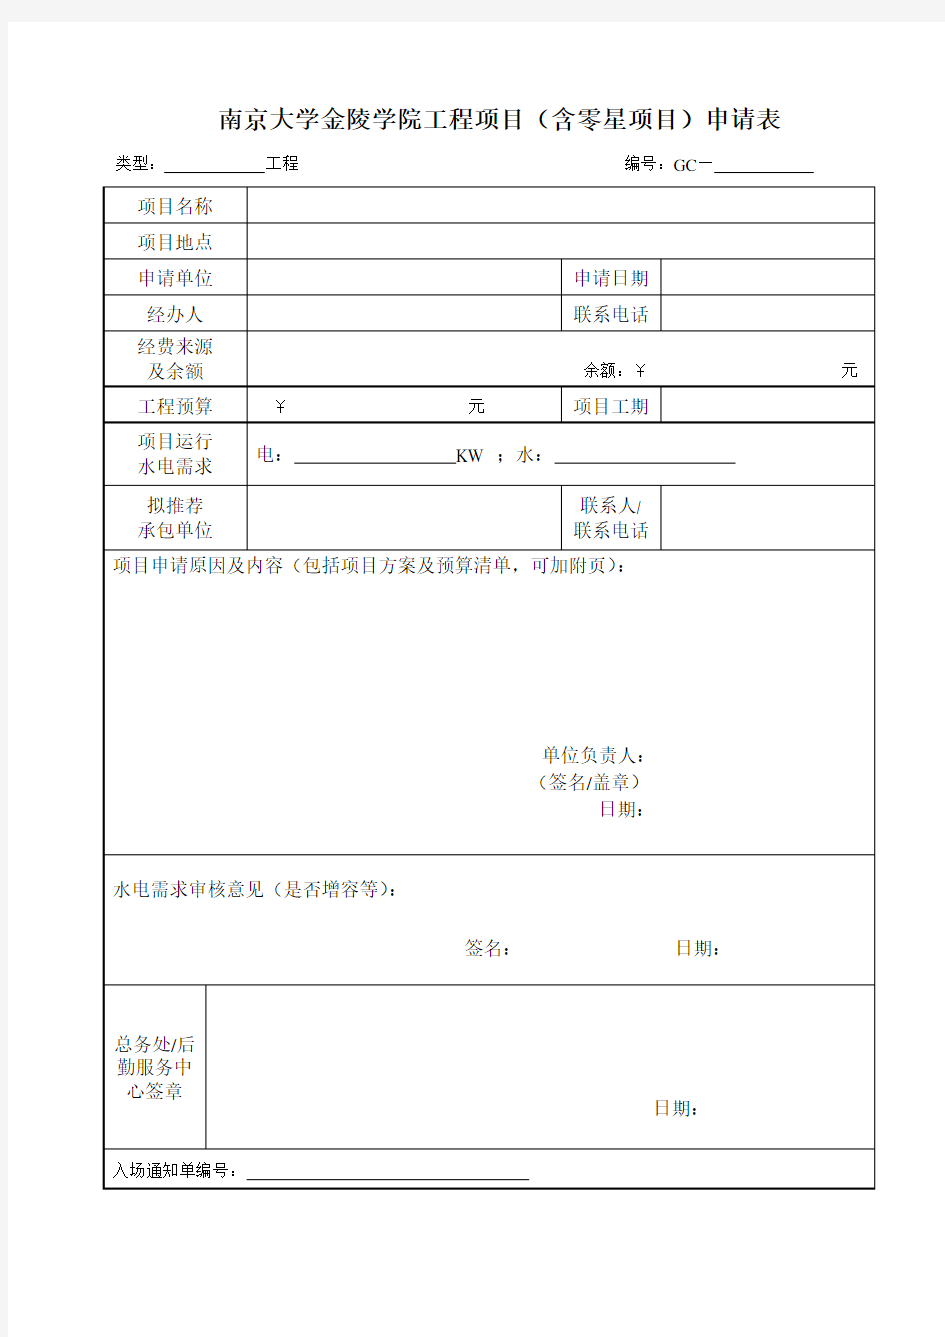 南京大学金陵学院工程项目(含零星项目)申请表